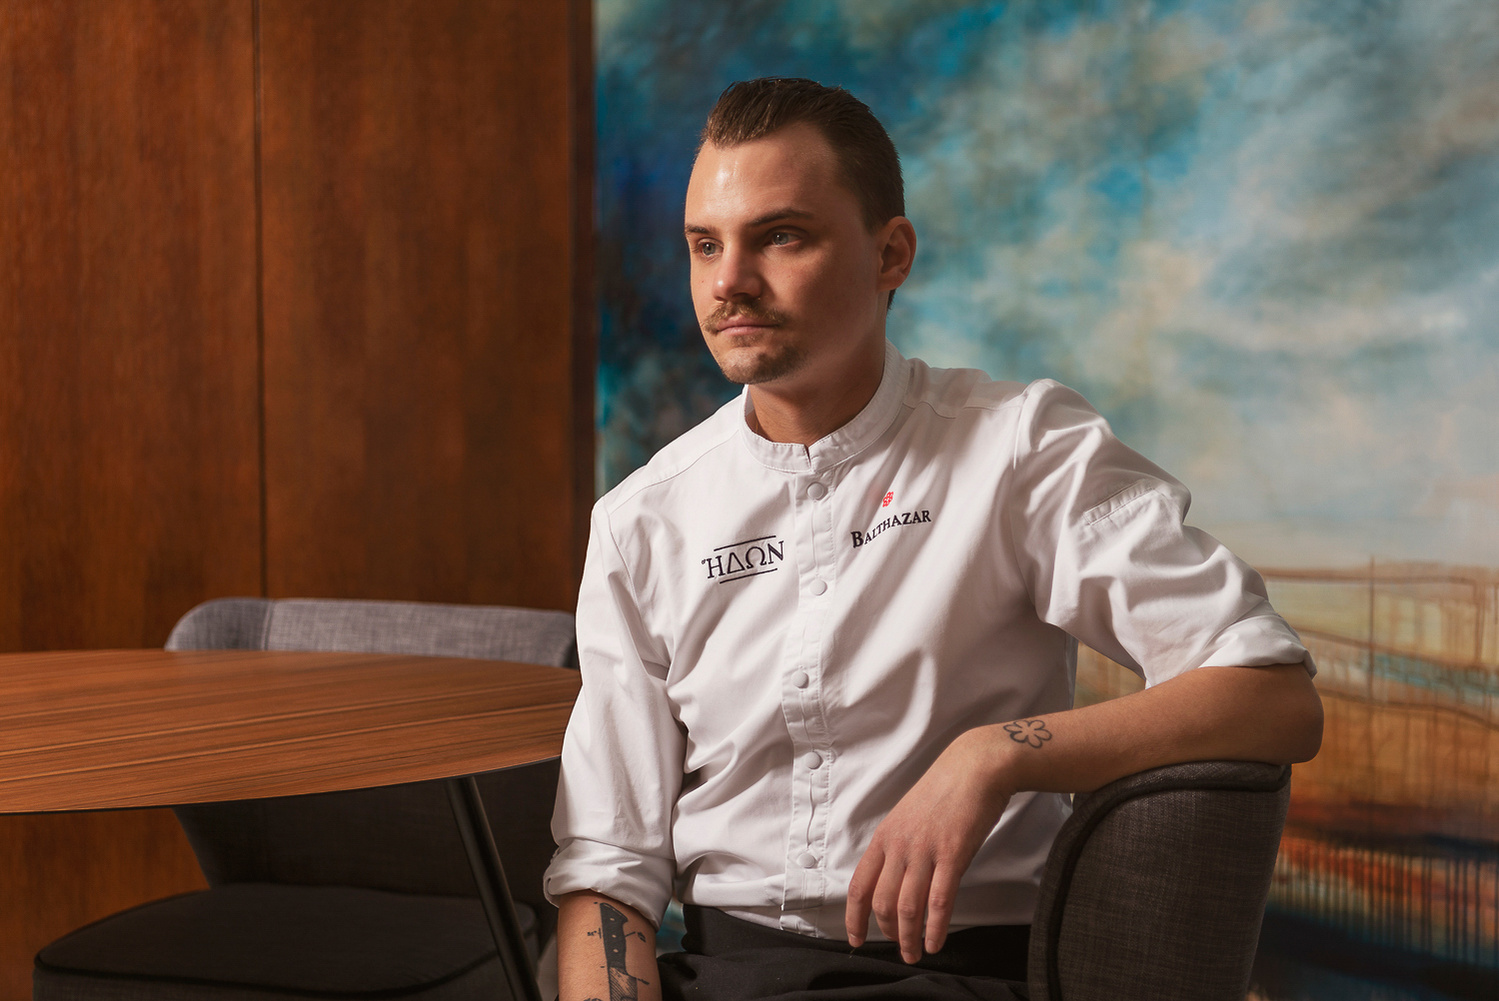 Portrait de Balthazar Gonzalez, chef étoile du restaurant gastronomique l'Hedone. Photographié dans la salle du restaurant à Toulouse.